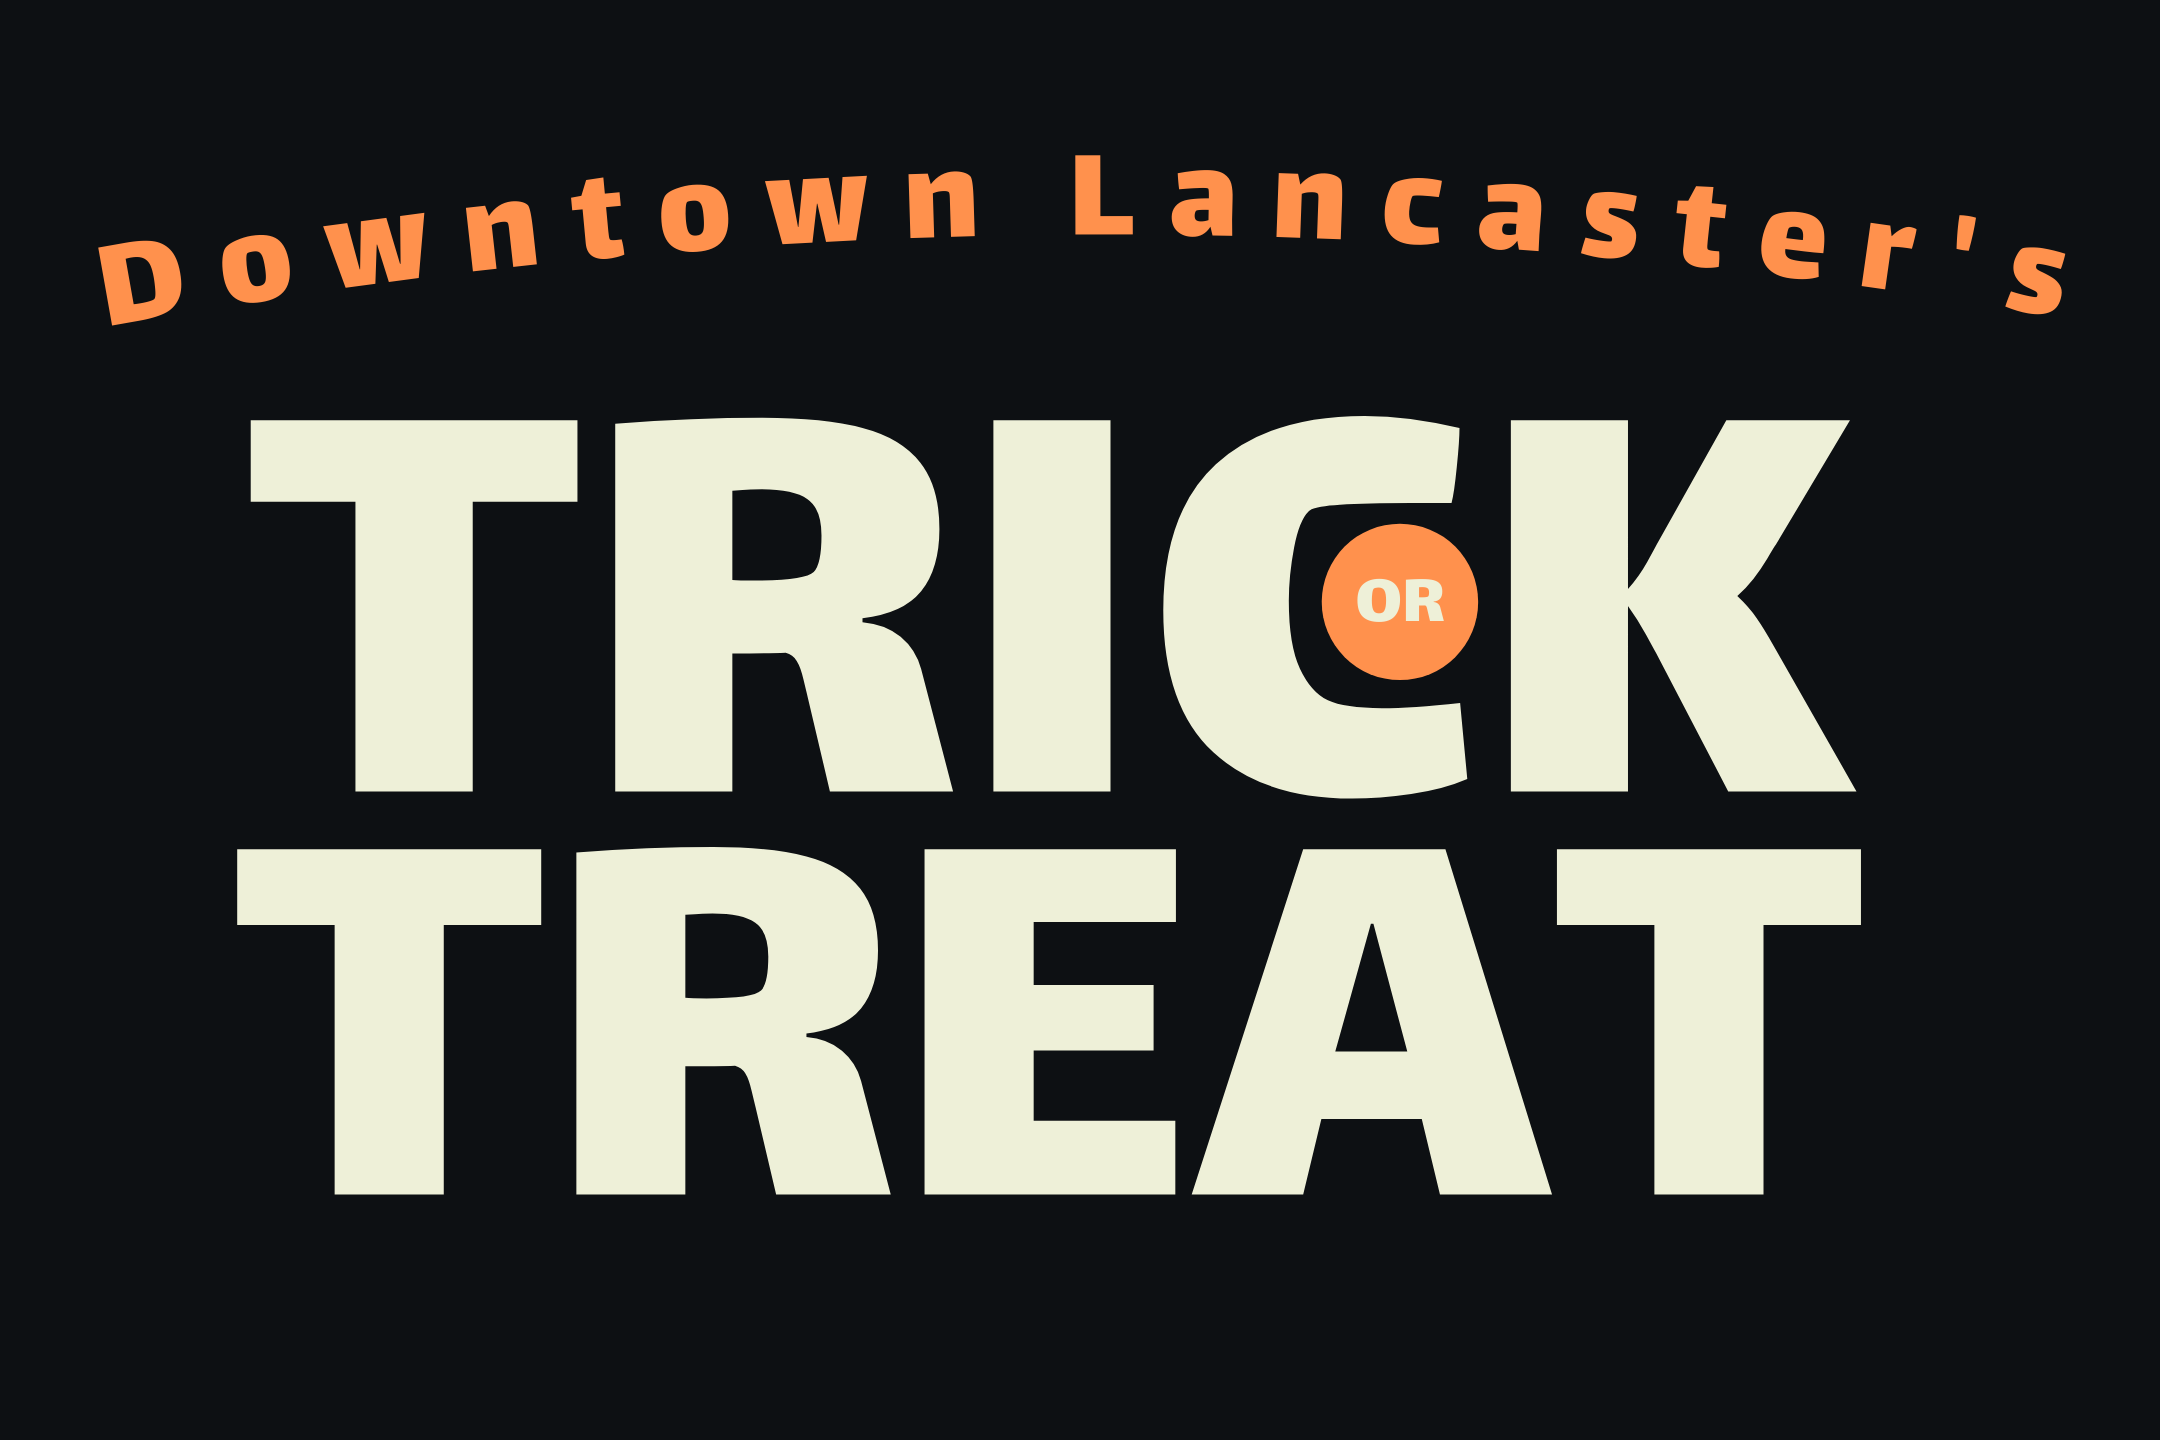 Downtown Lancaster's Trick or treat — DESTINATION DOWNTOWN LANCASTER